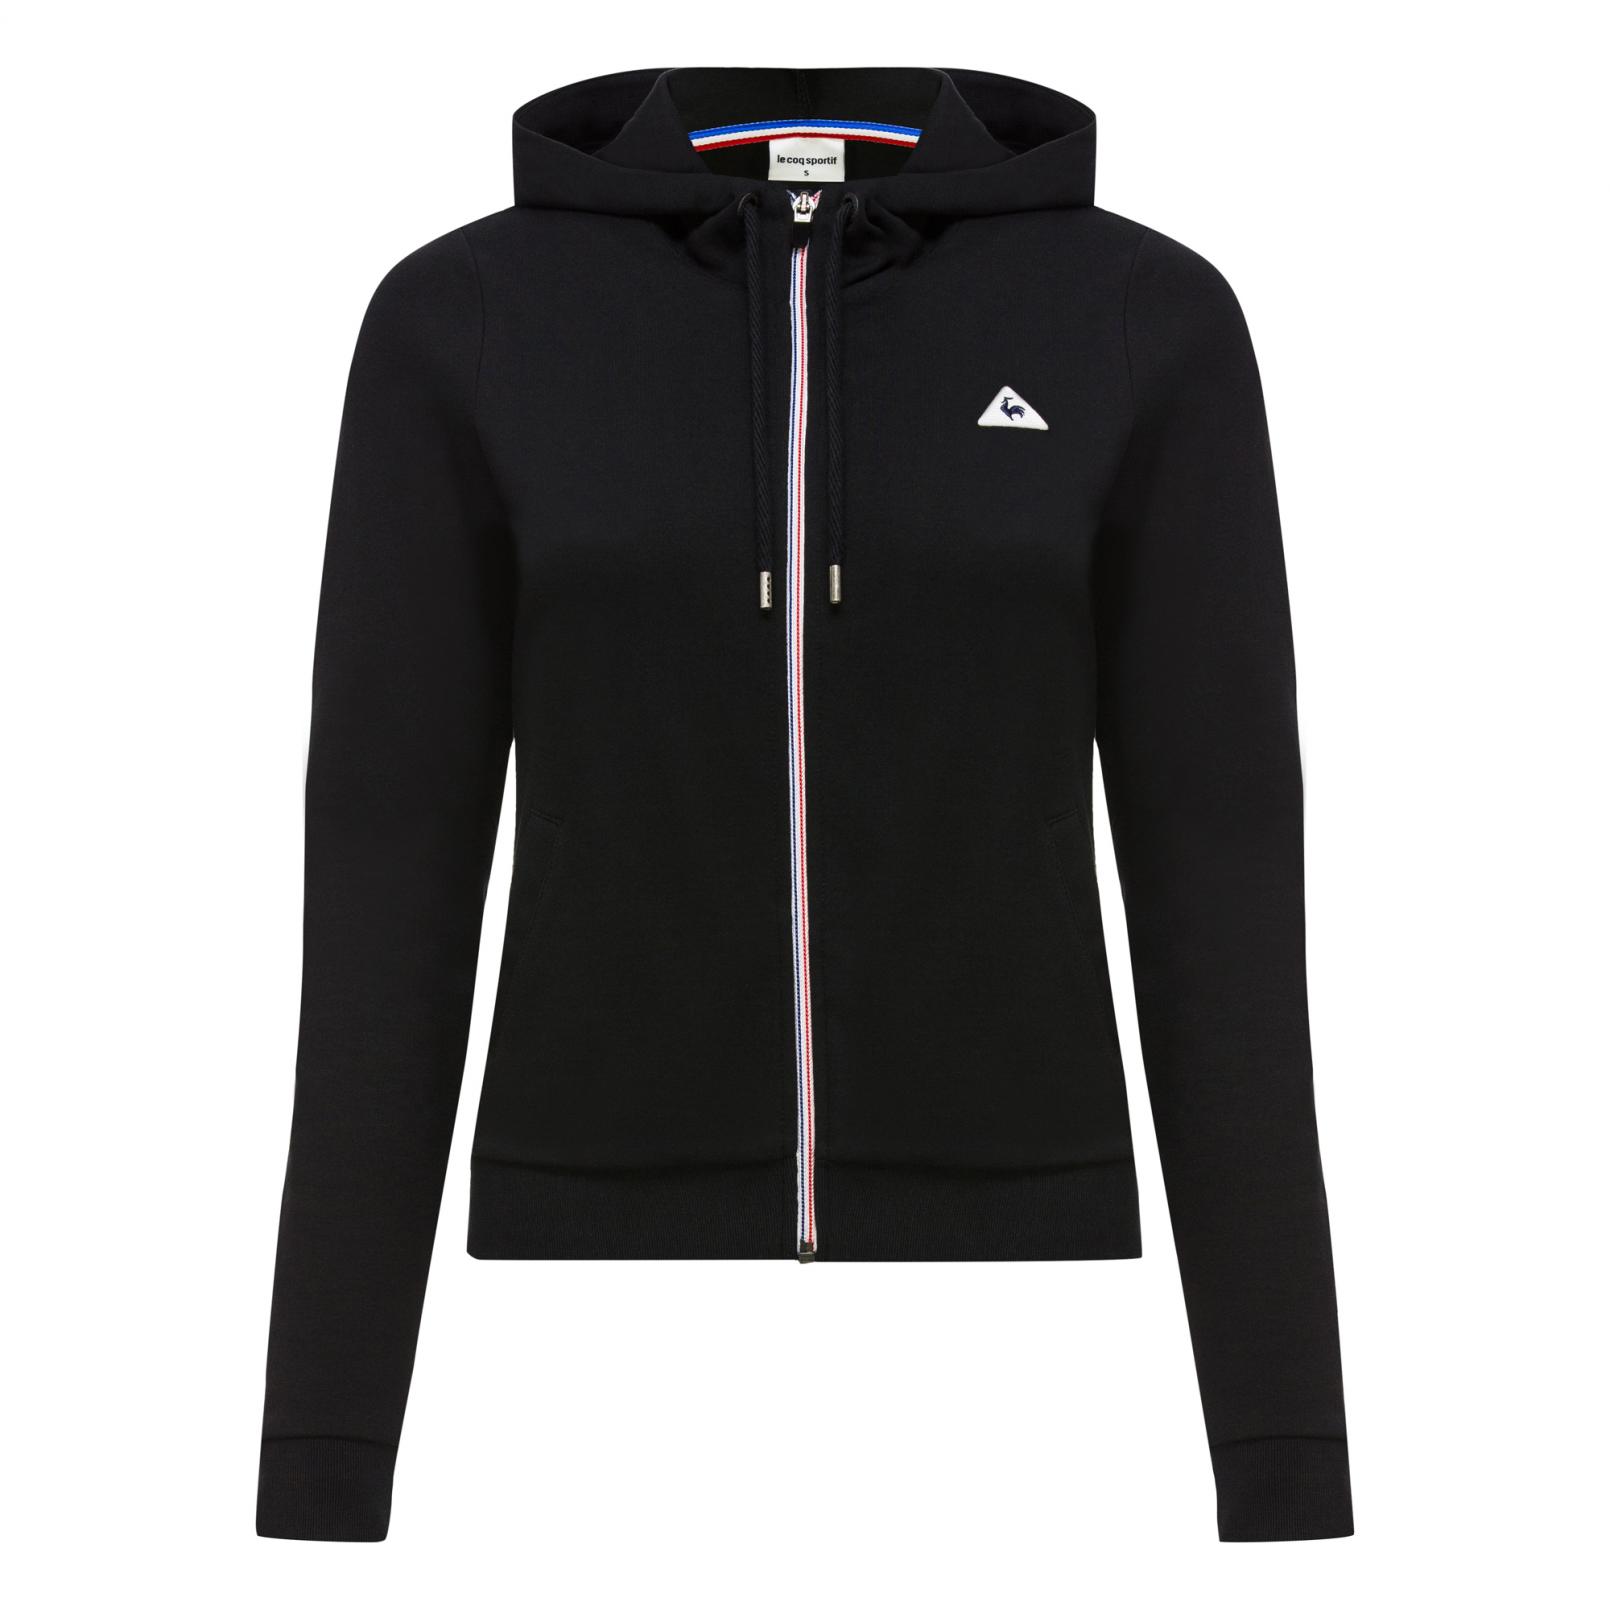 Sweatshirts & Hoodies – Le Coq Sportif Essentiels Pull-over hood Black